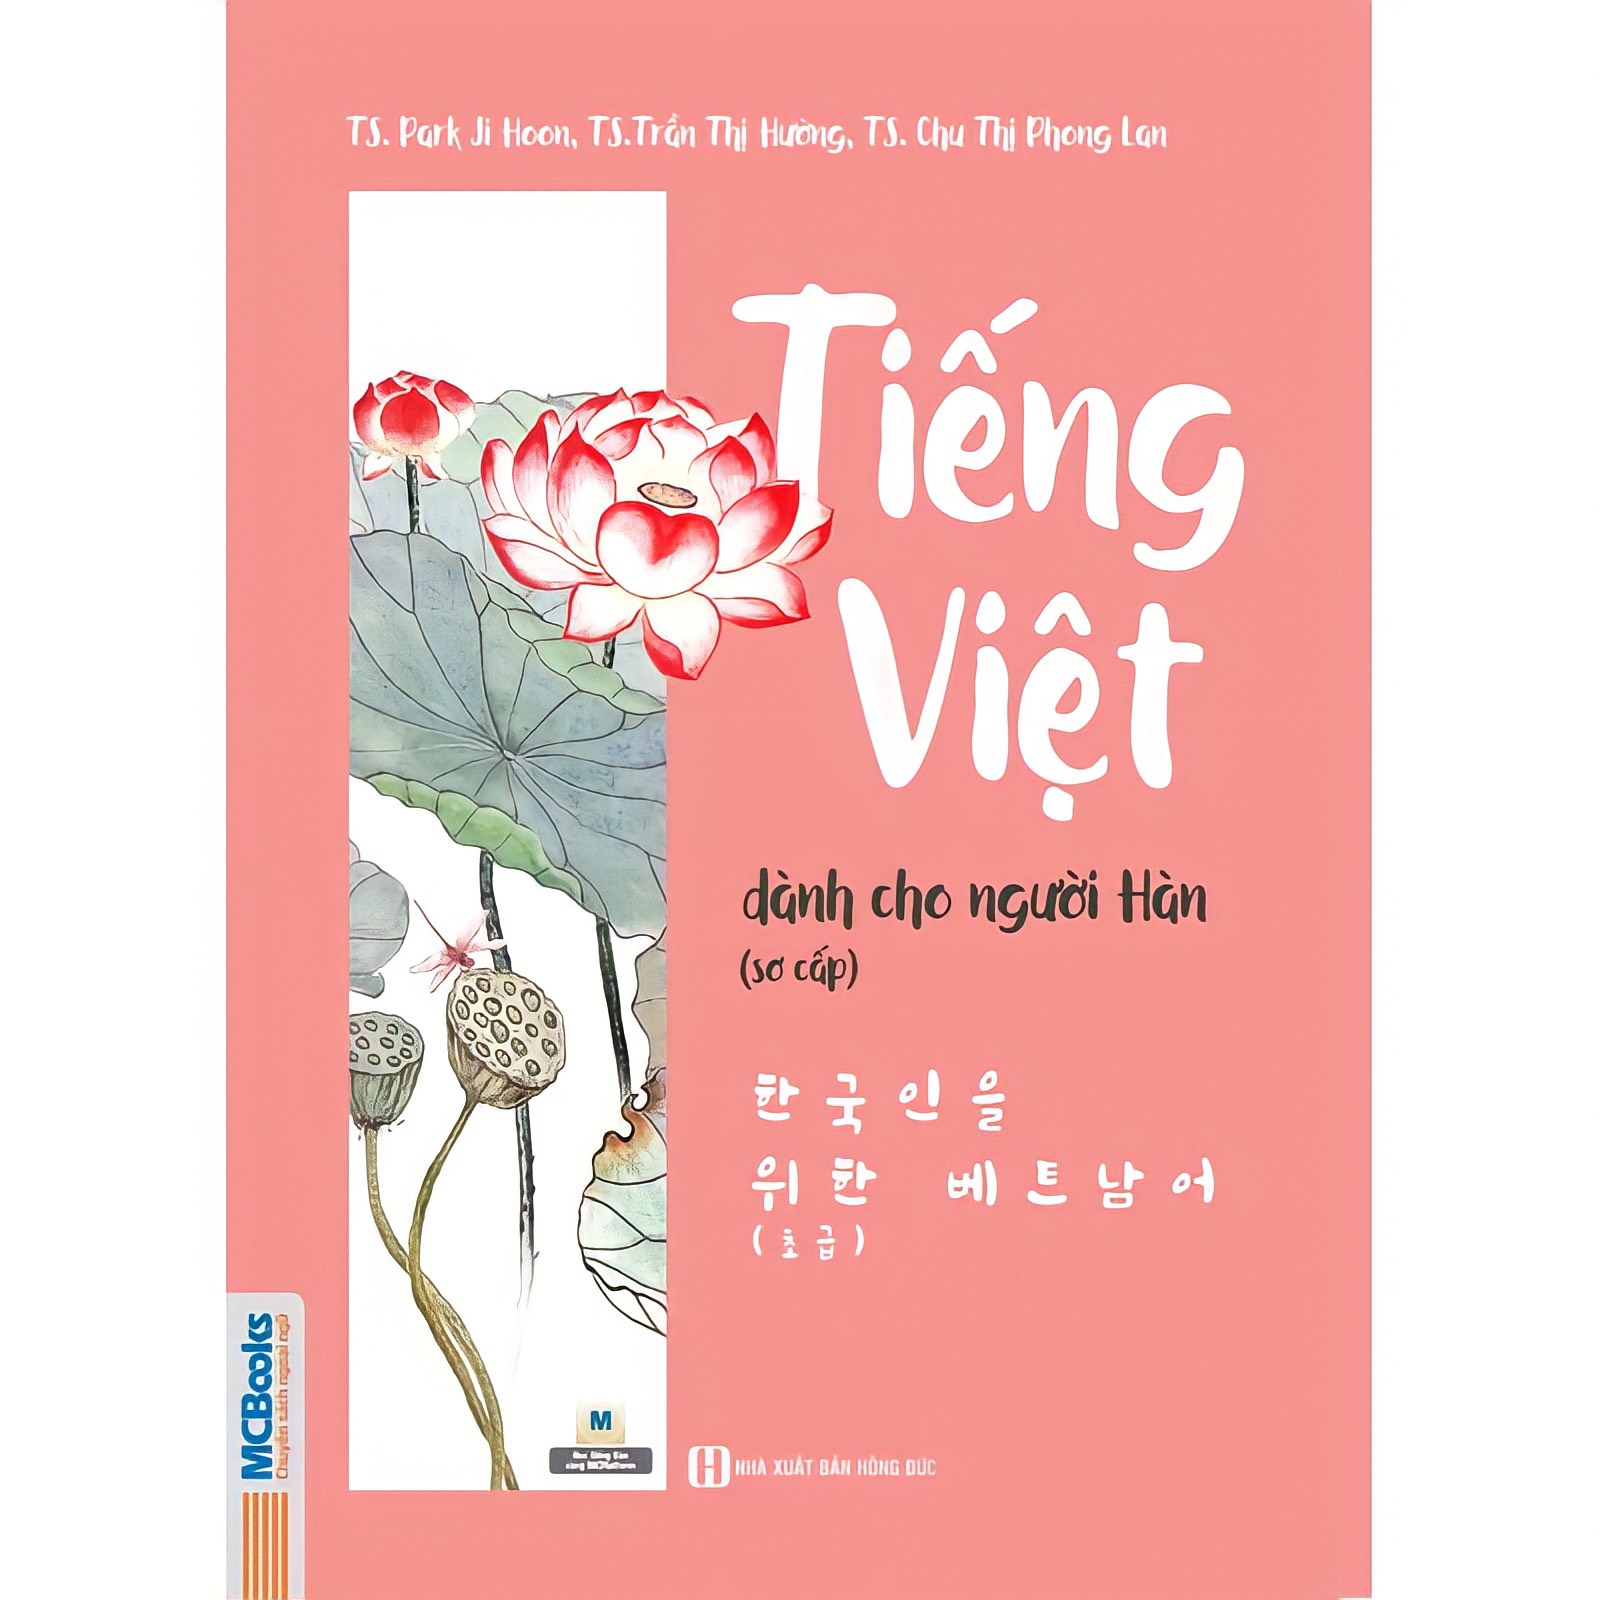 Bìa sách tiếng Việt dành cho người Hàn sơ cấp